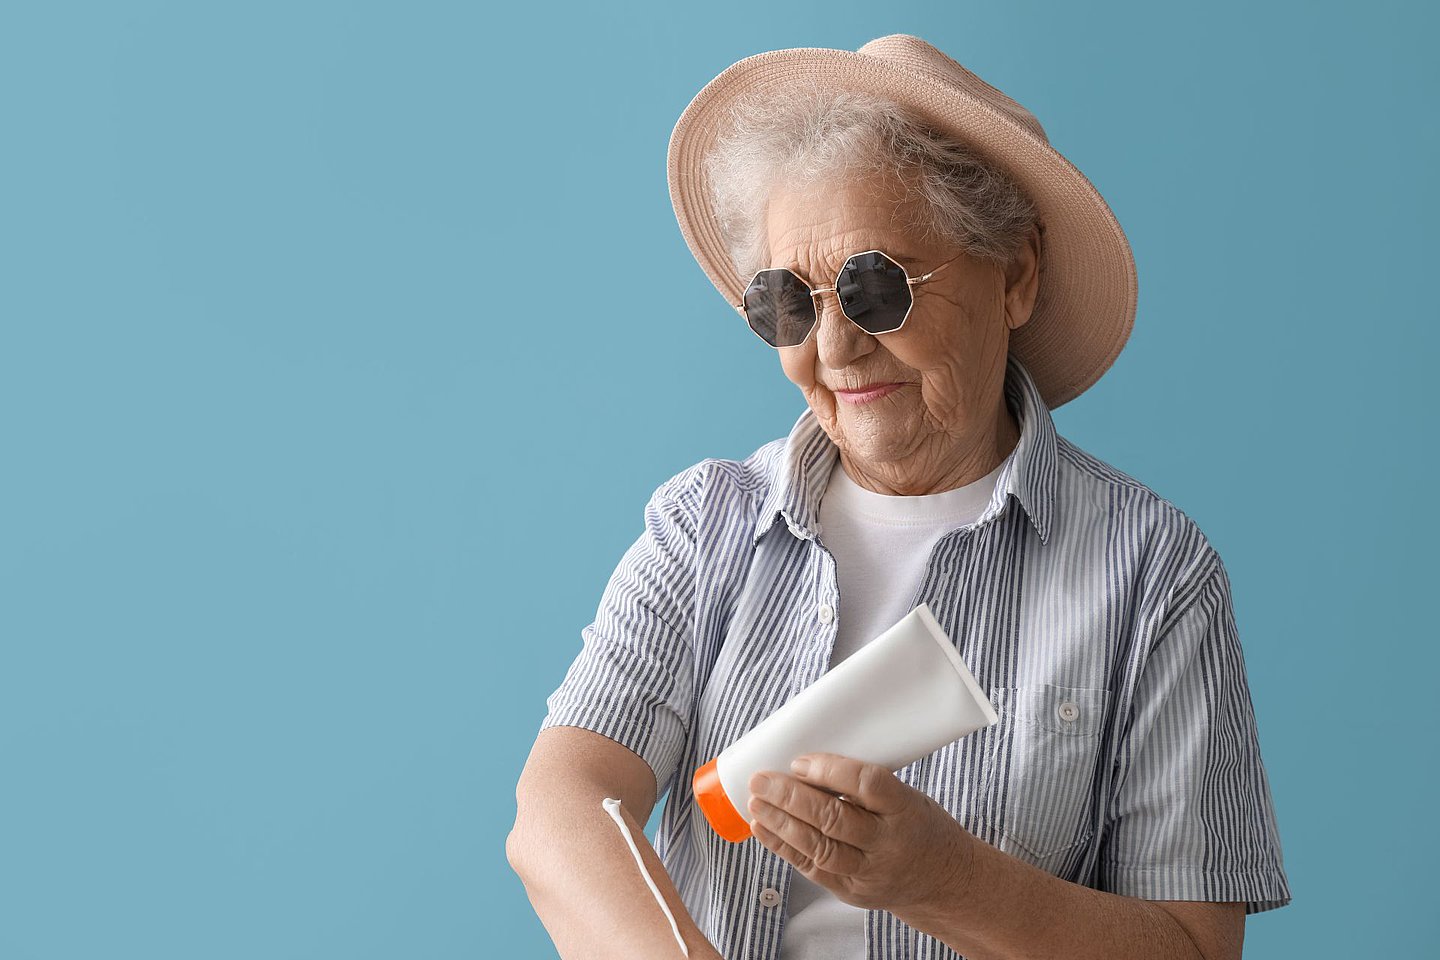 Schmuckbild zeigt Seniorin, die sich mit ausreichend Sonnenschutzmittel eincremt